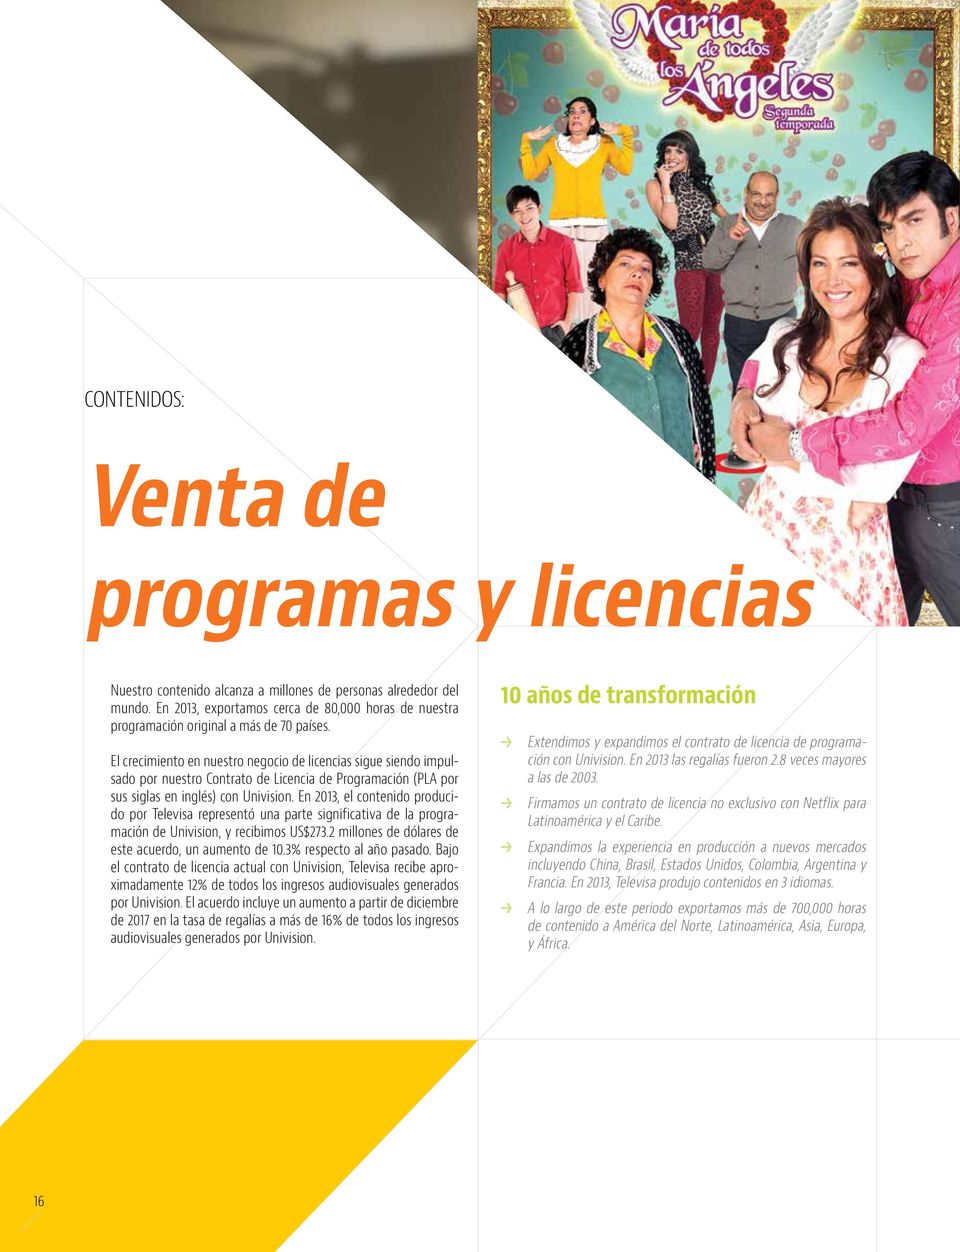 El crecimiento en nuestro negocio de licencias sigue siendo impulsado por nuestro Contrato de Licencia de Programación (PLA por sus siglas en inglés) con Univision.